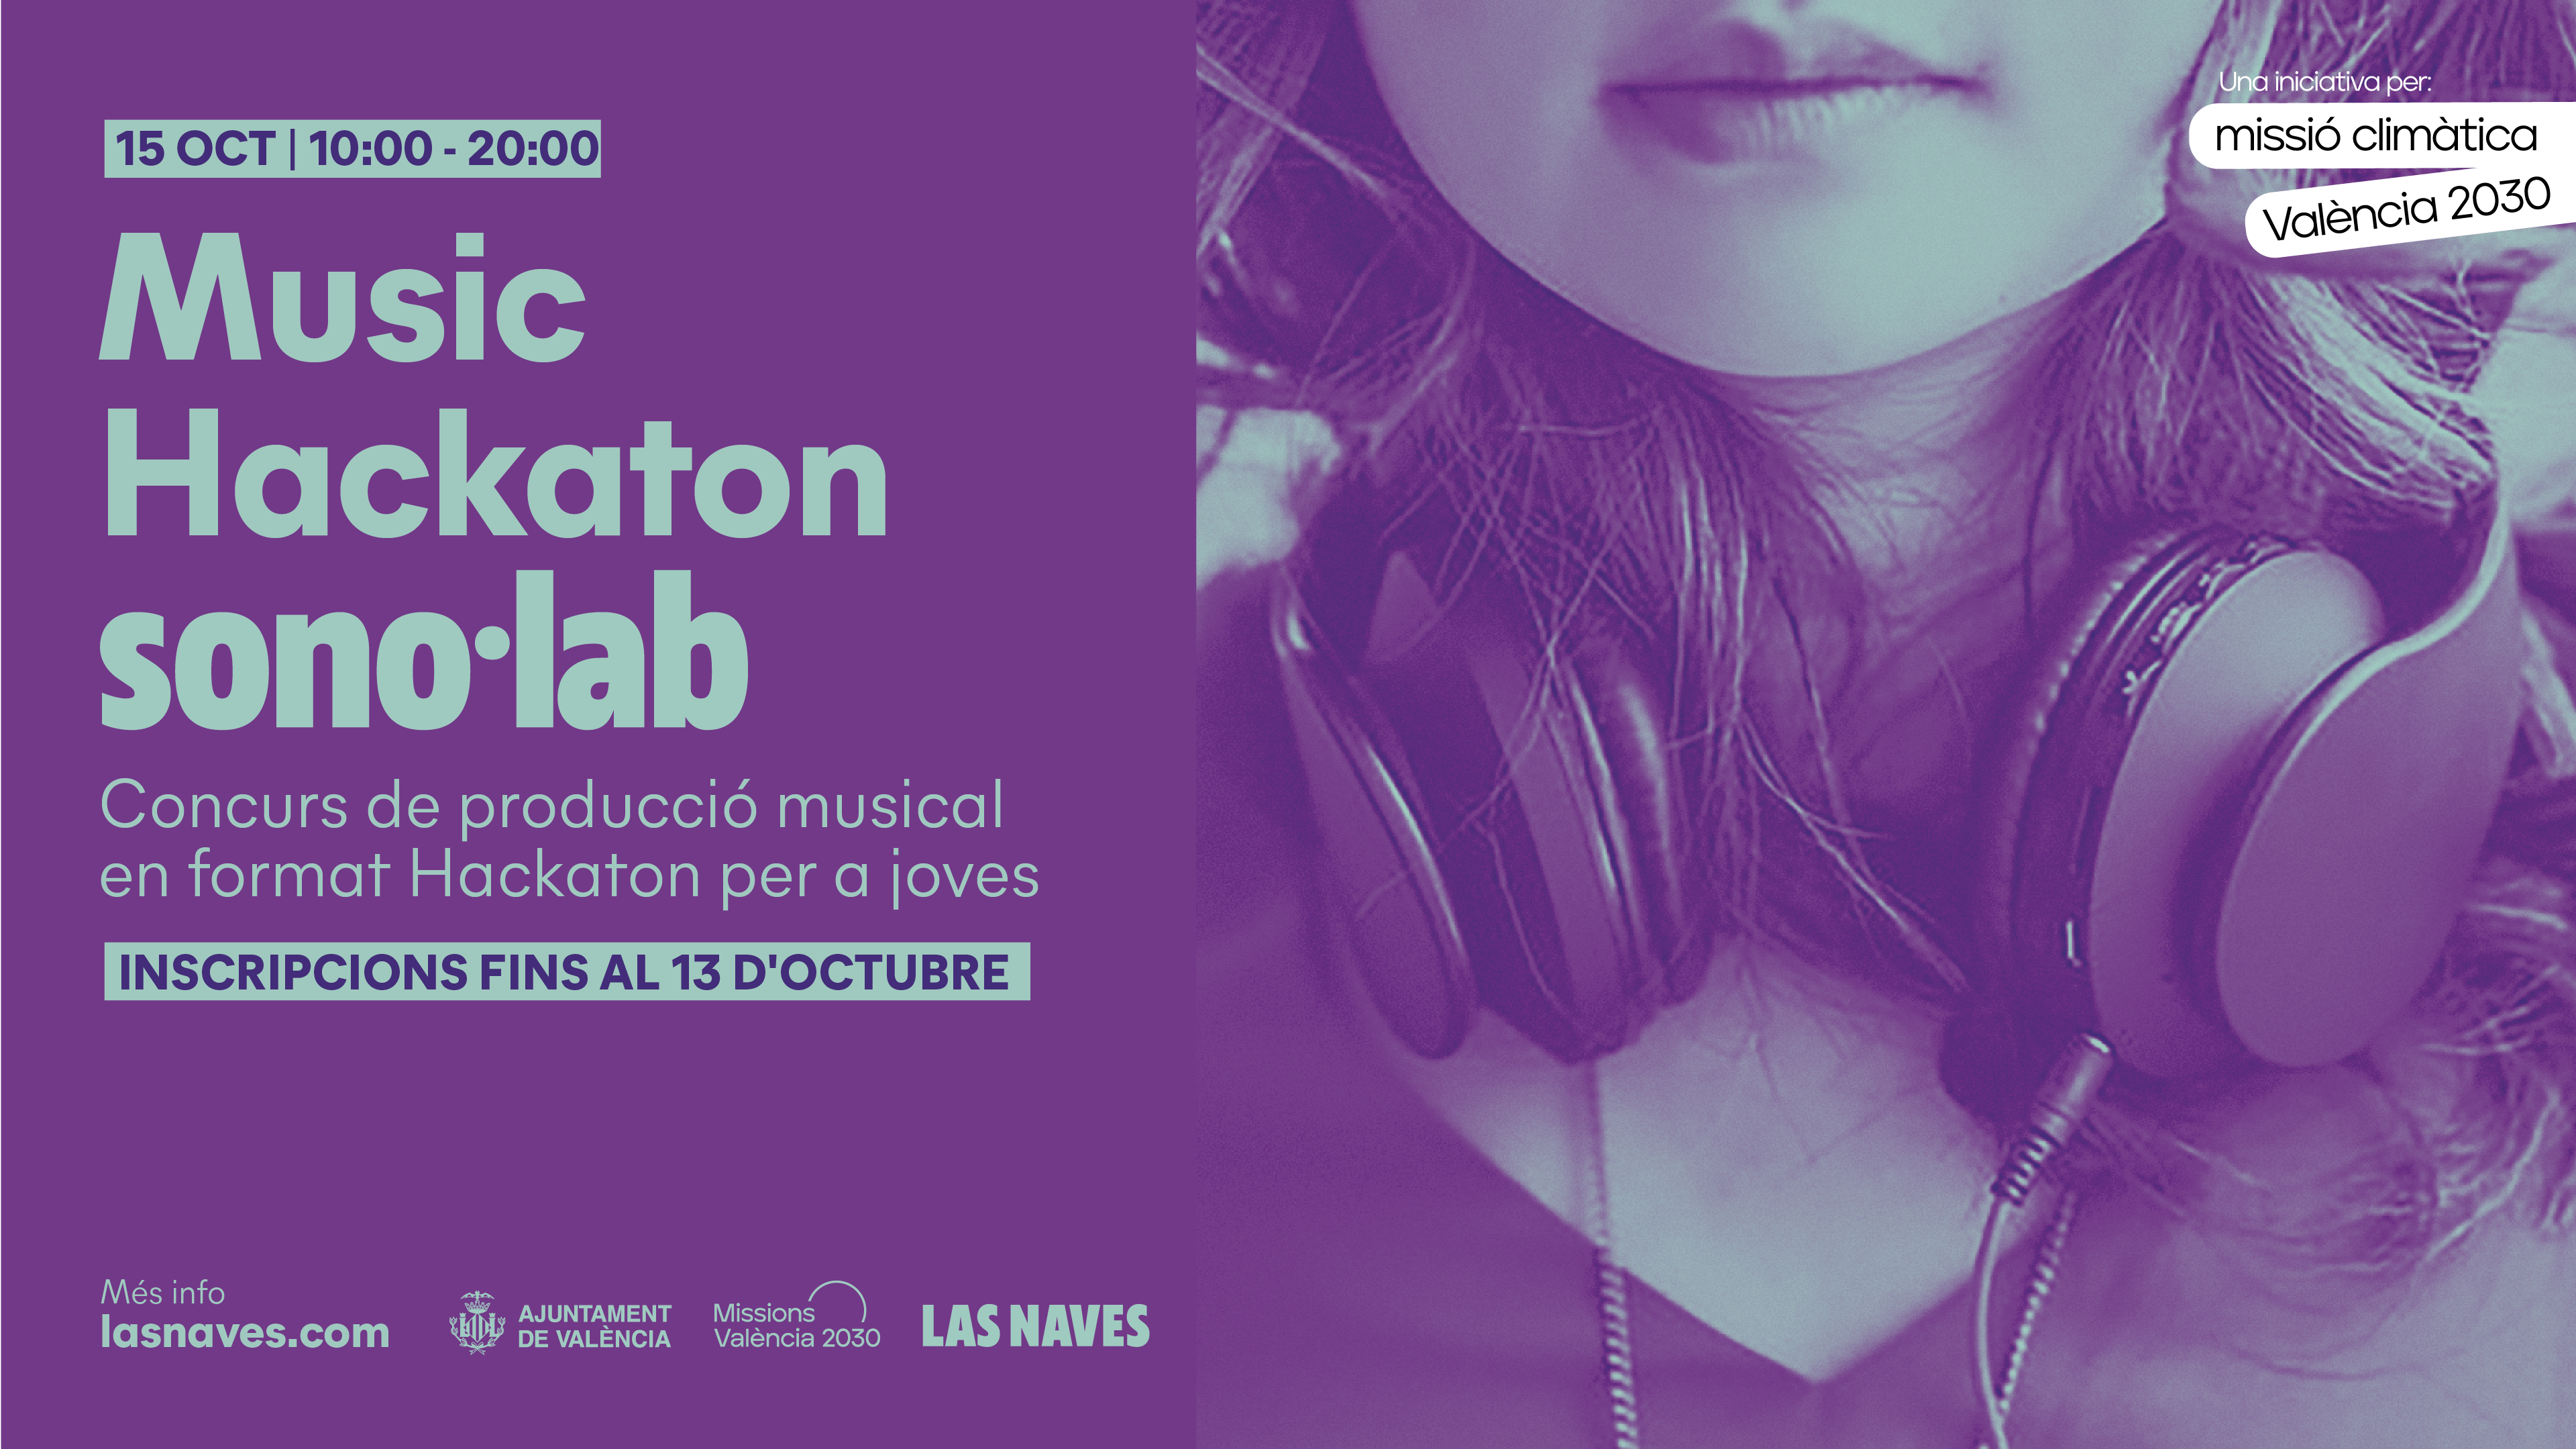 Cartell anunciador del concurs de producció musical Music Hackaton de sonol·lab